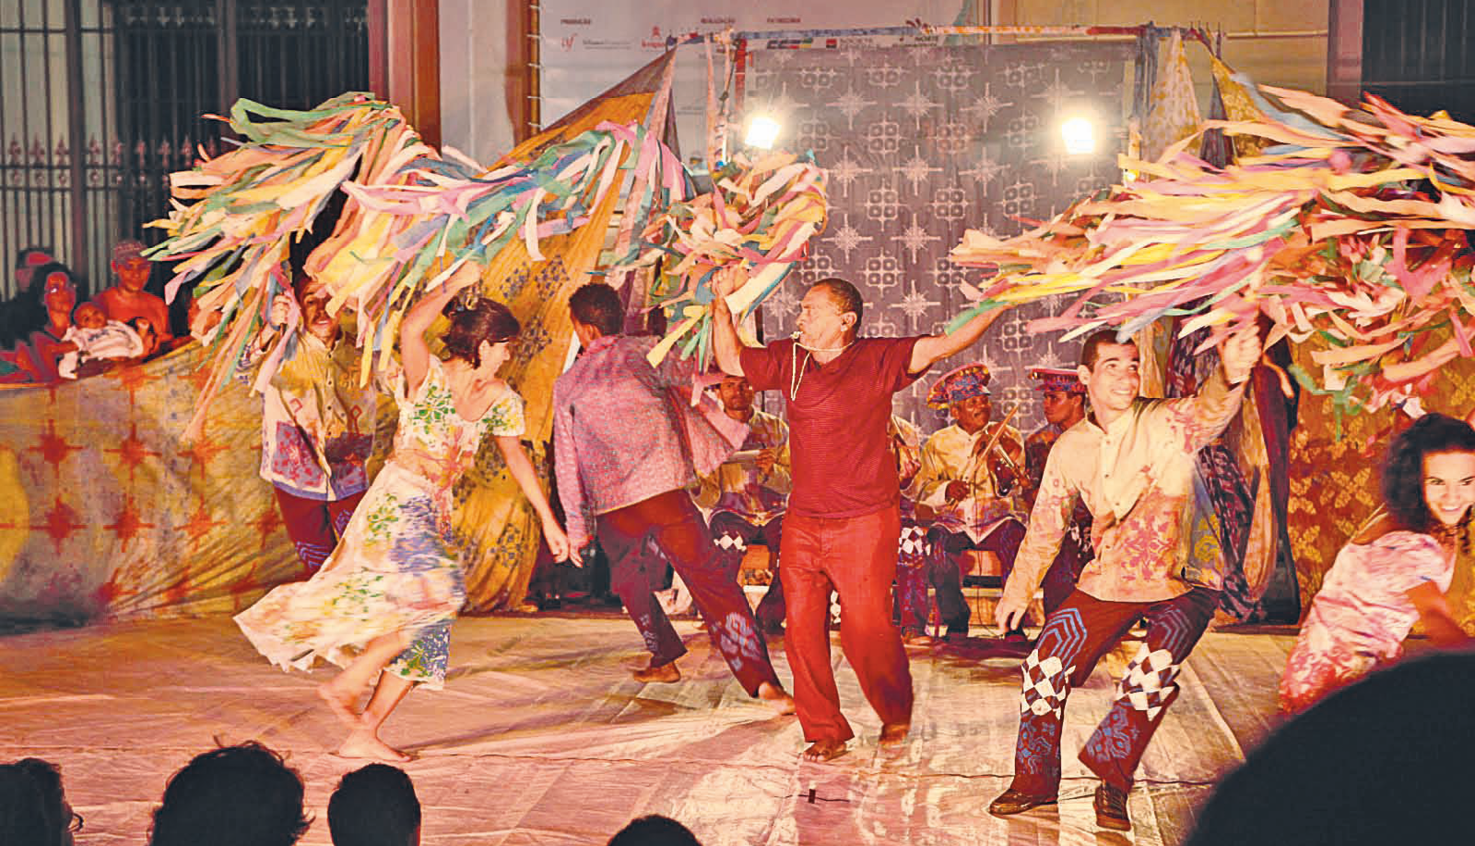 Fotografia. Grupo de dança com homens e mulheres vestidos com roupas de cores vibrantes. Eles movimentam para o alto fitas e bandeiras coloridas. Ao centro, homem com roupa vermelha traz um apito na boca. Ao fundo, músicos sentados tocam instrumentos musicais.